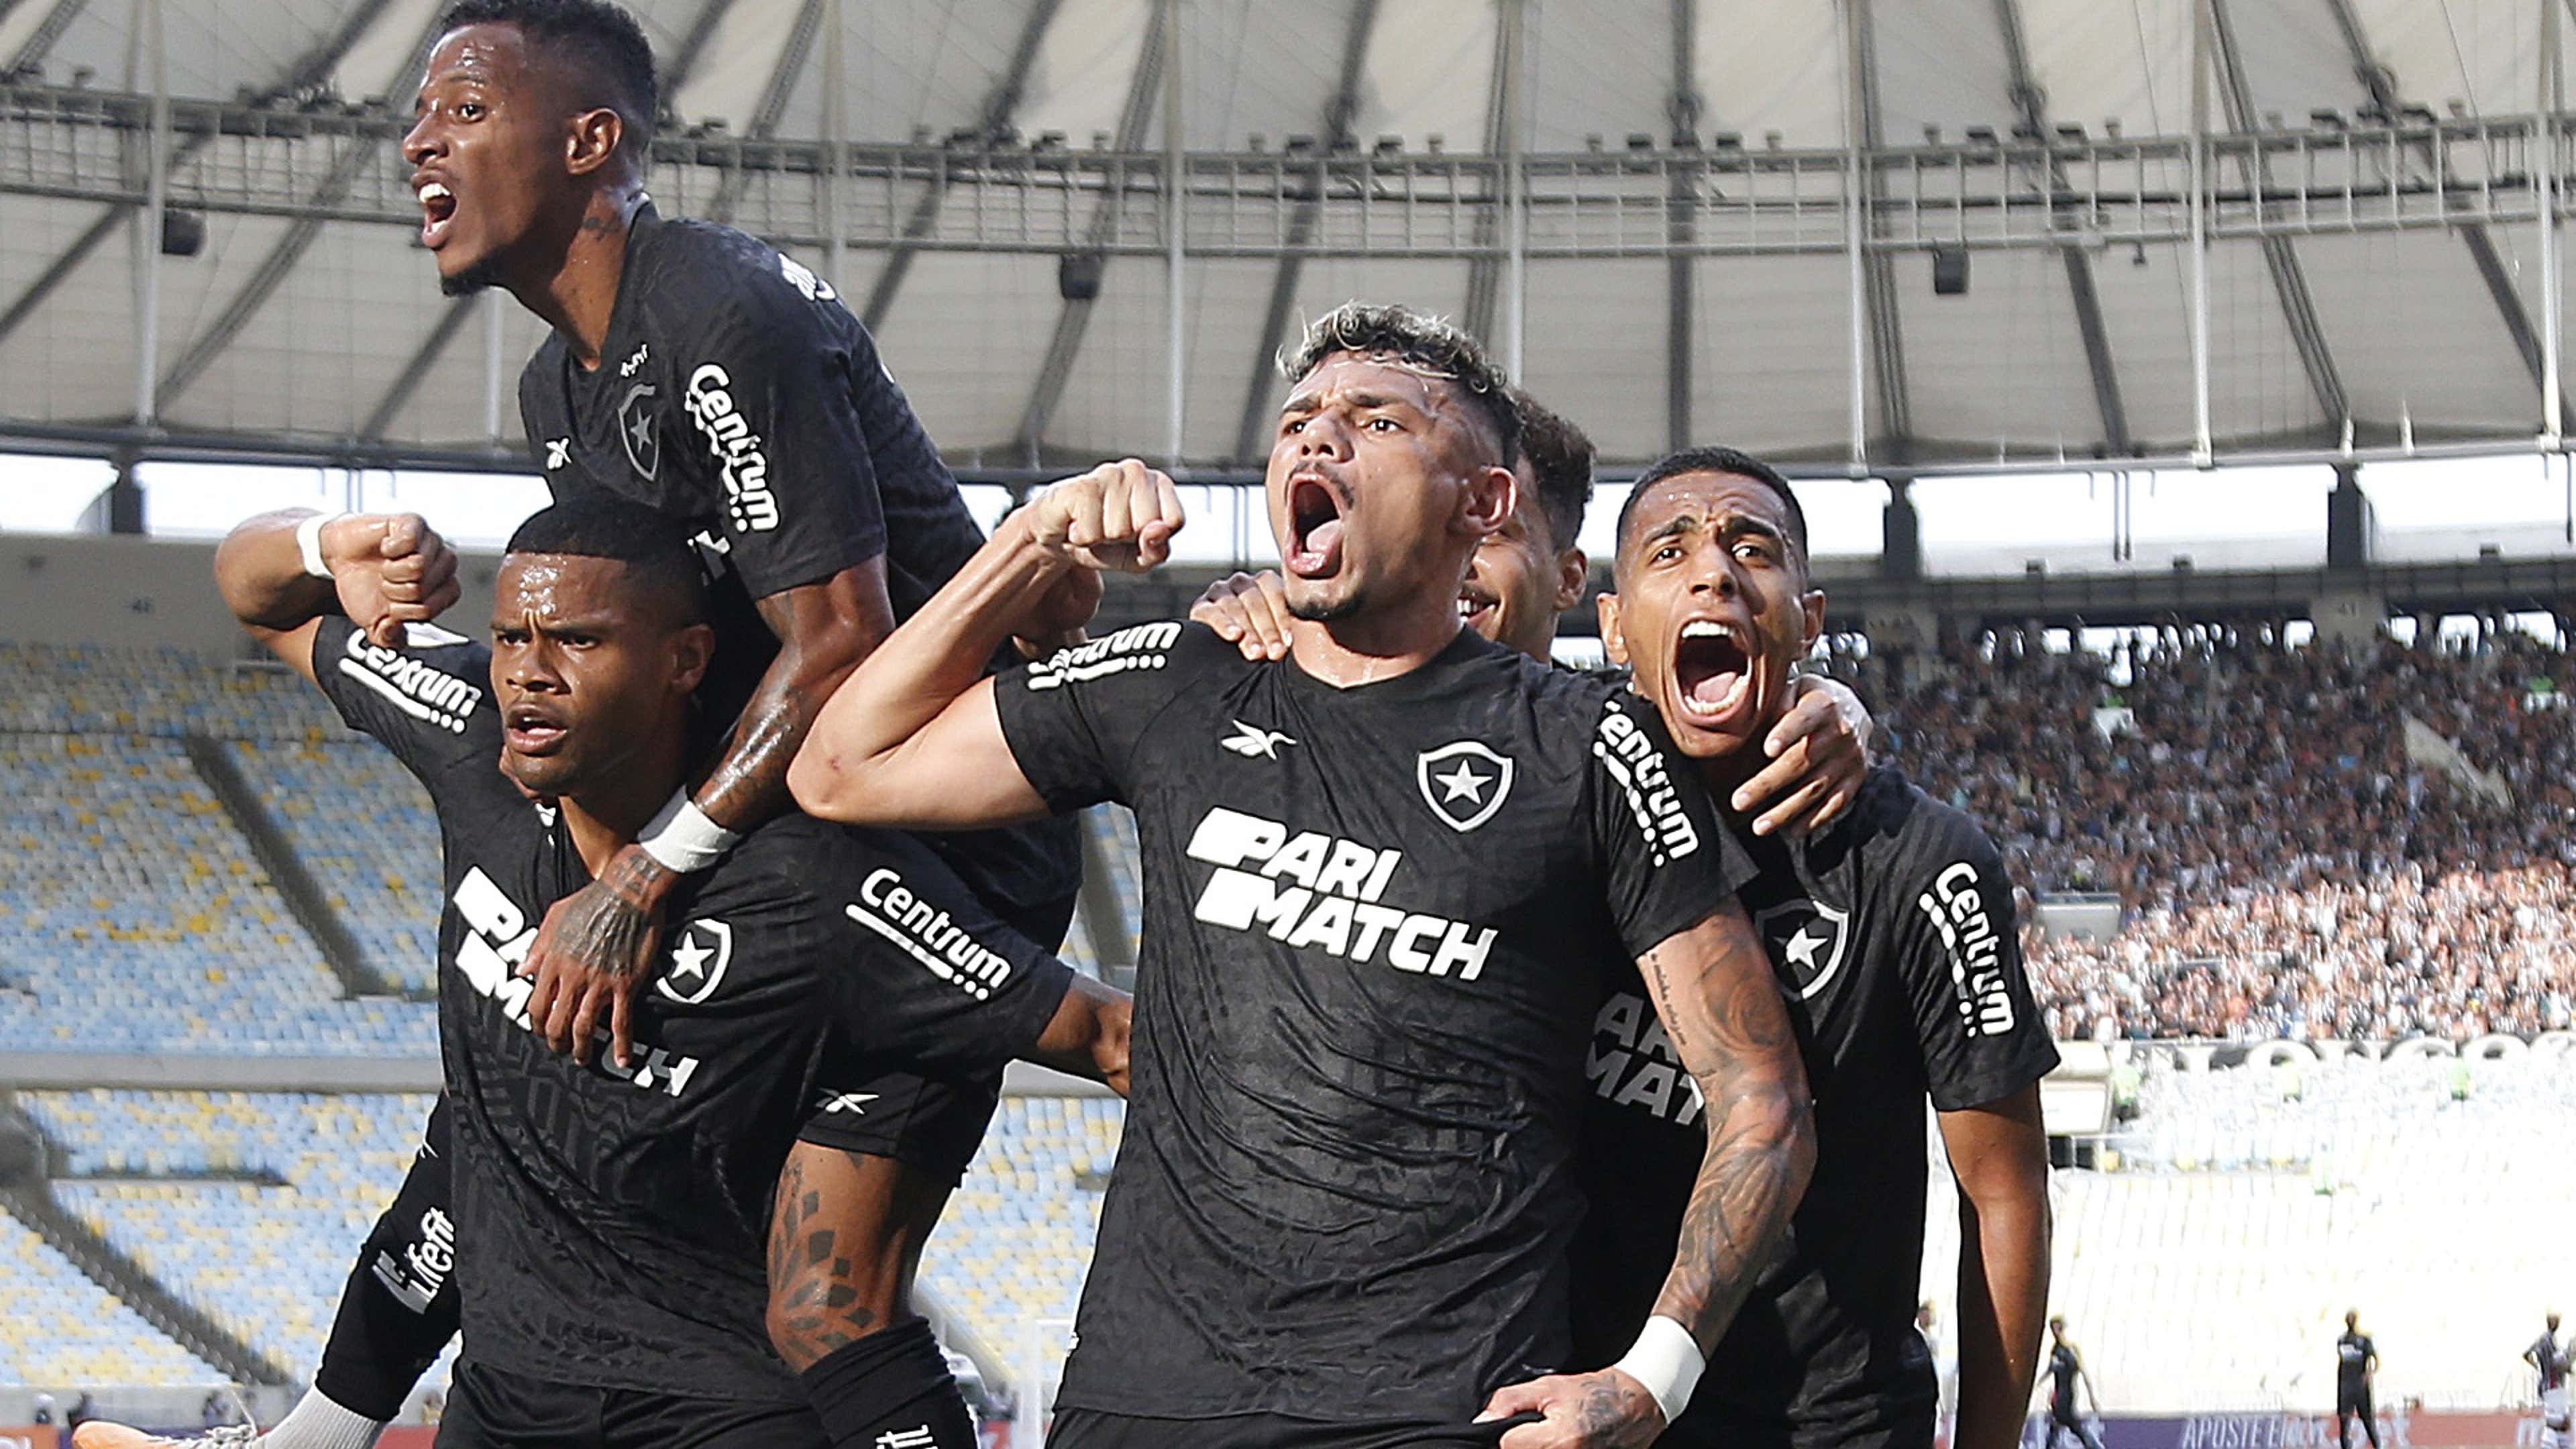 Grêmio vs Ypiranga: A Clash of Rivals